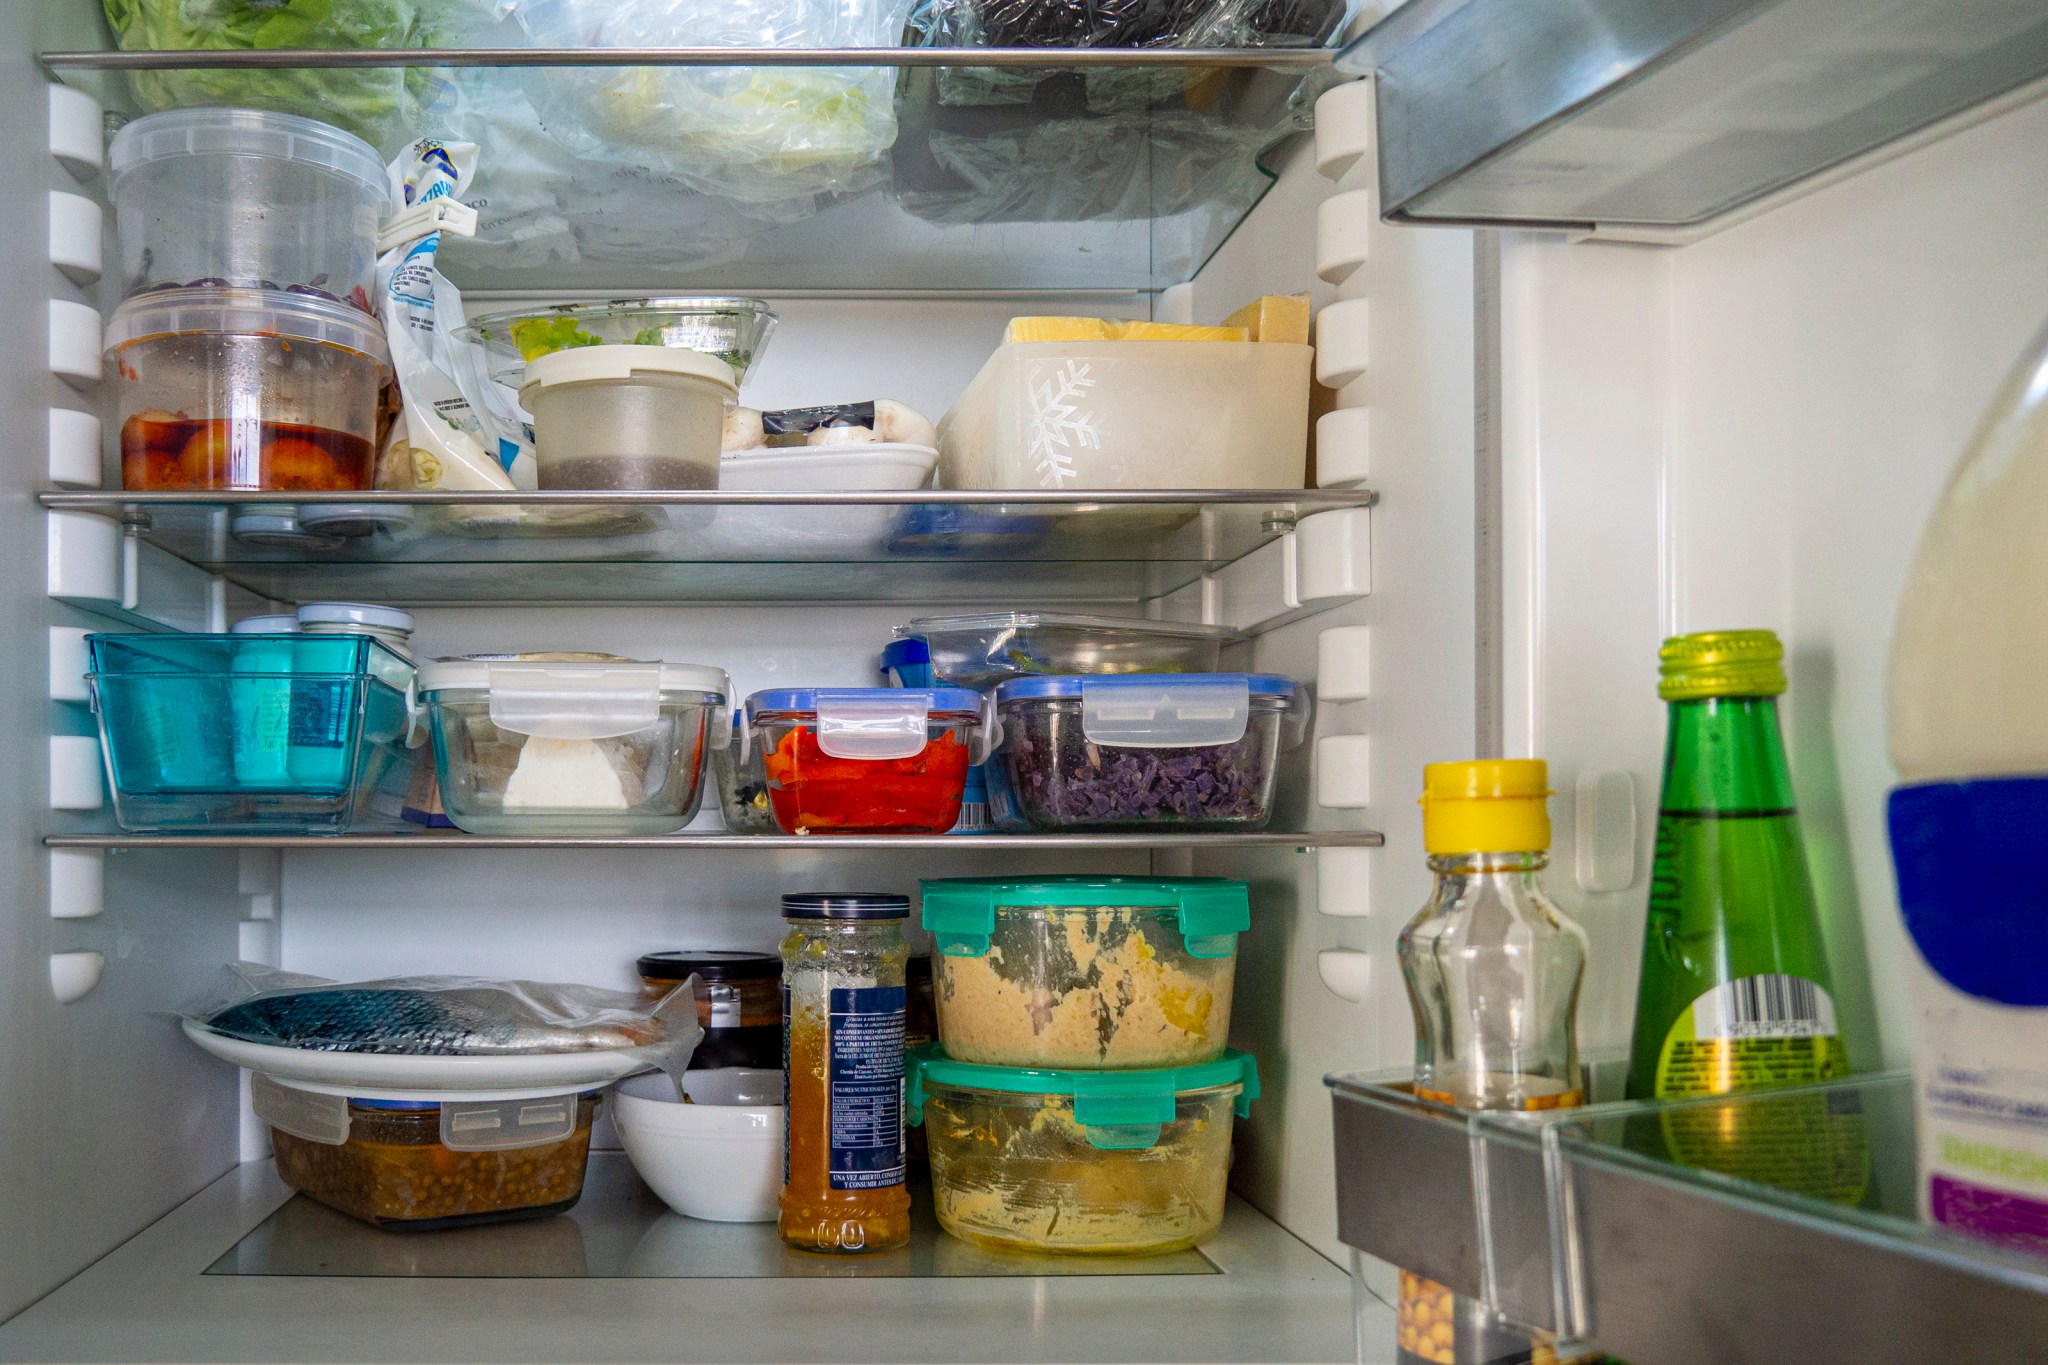 How to Organize A Refrigerator